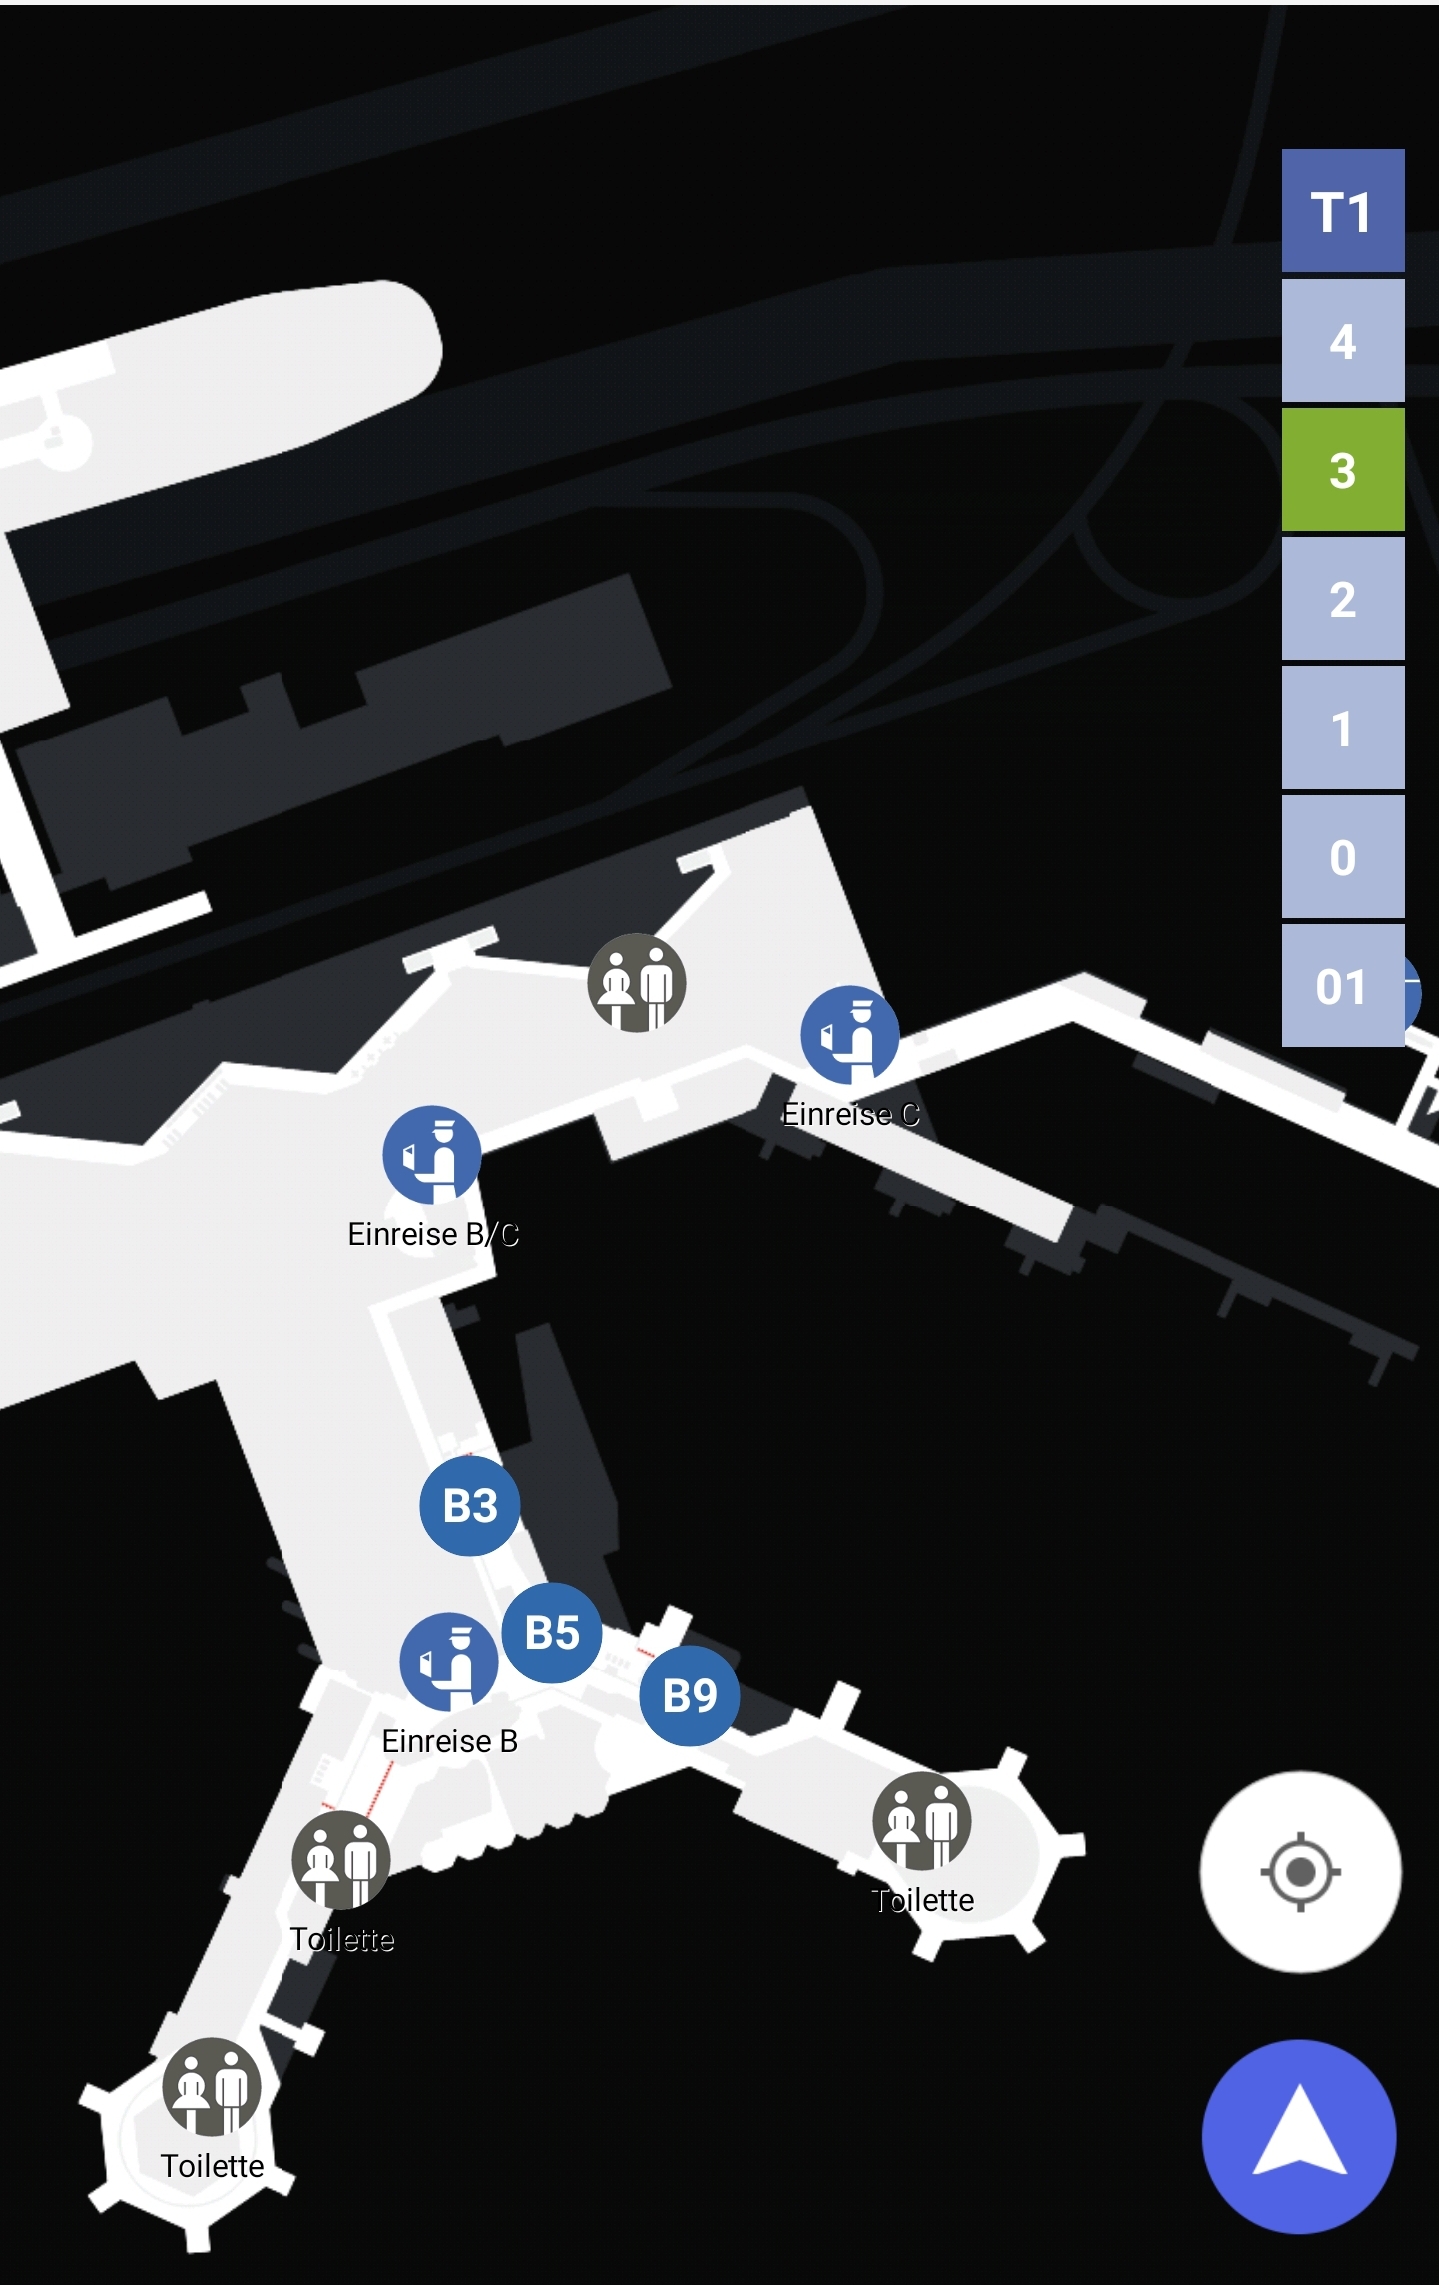 Karten Maps Terminal 1 mit Ebene 3 und Gates B am Flughafen Frankfurt Airport FRA